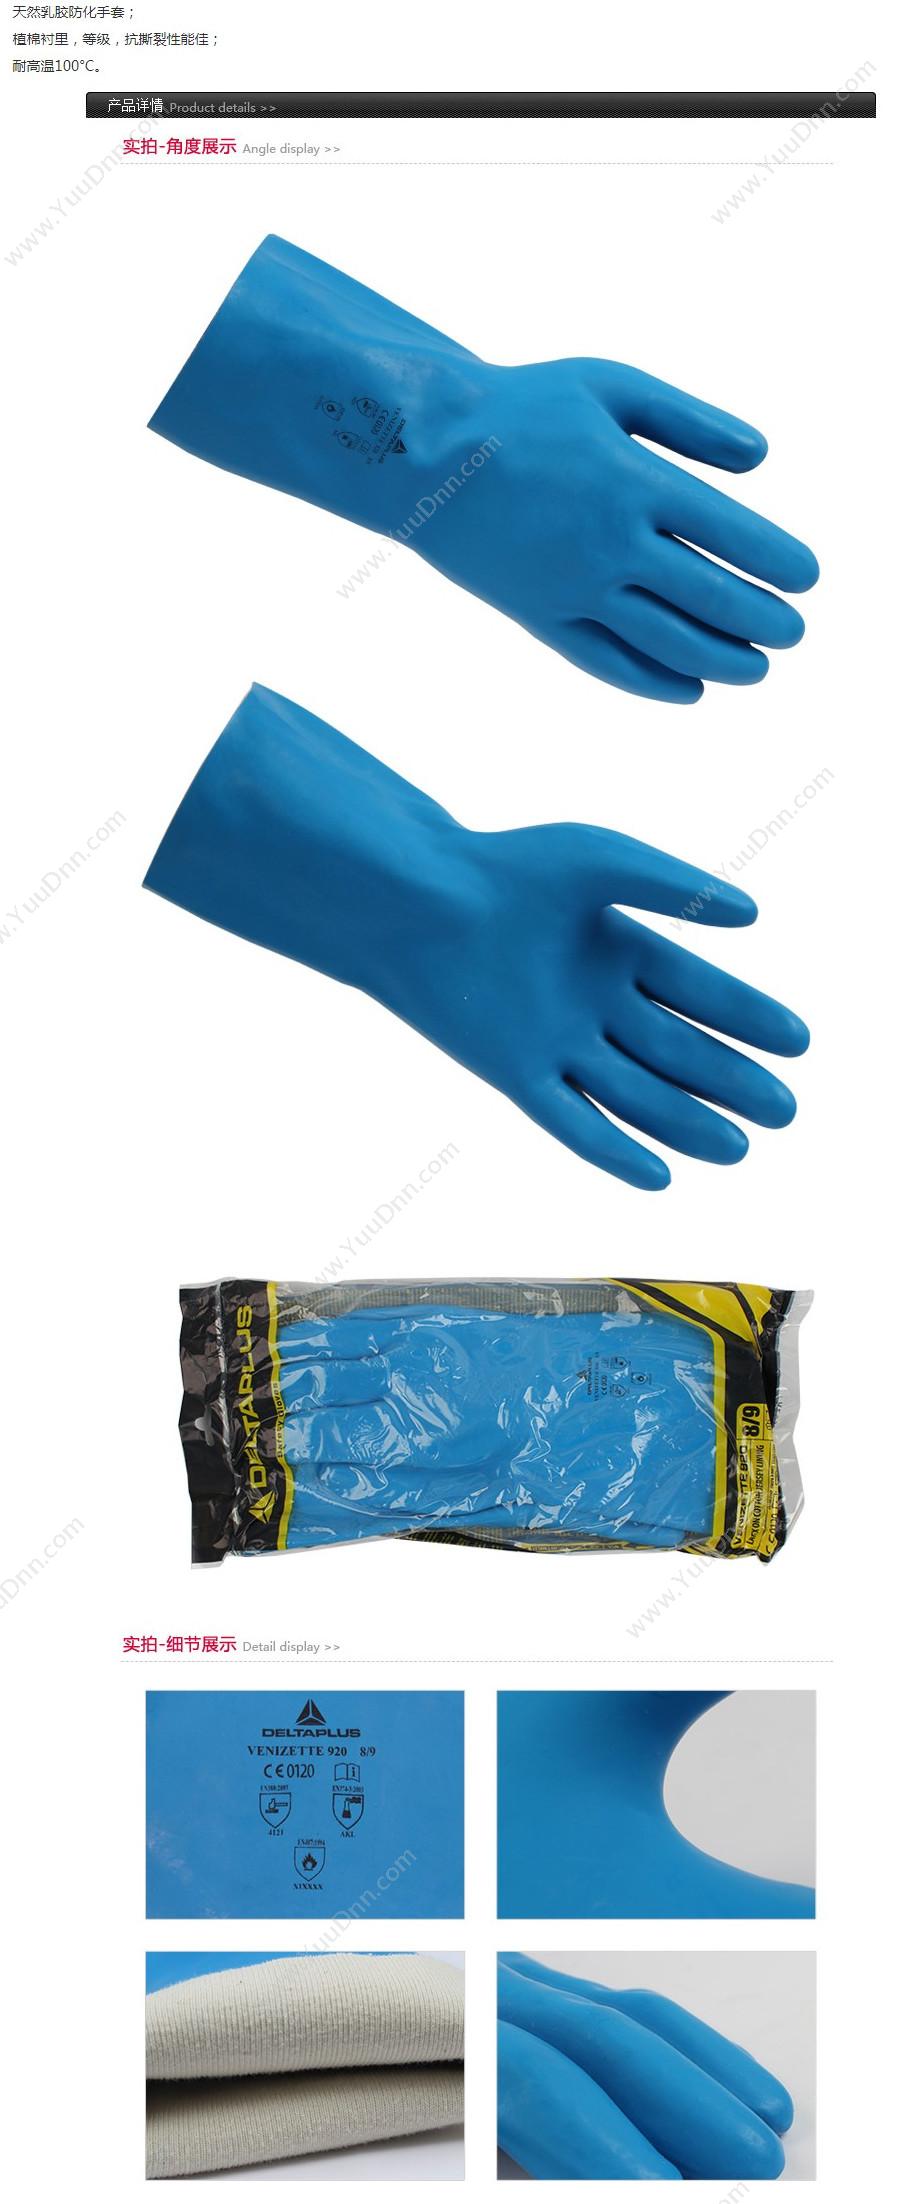 代尔塔 Delta 201920 天然乳胶手套 VE920/9.5 （蓝）12副/打 防化手套